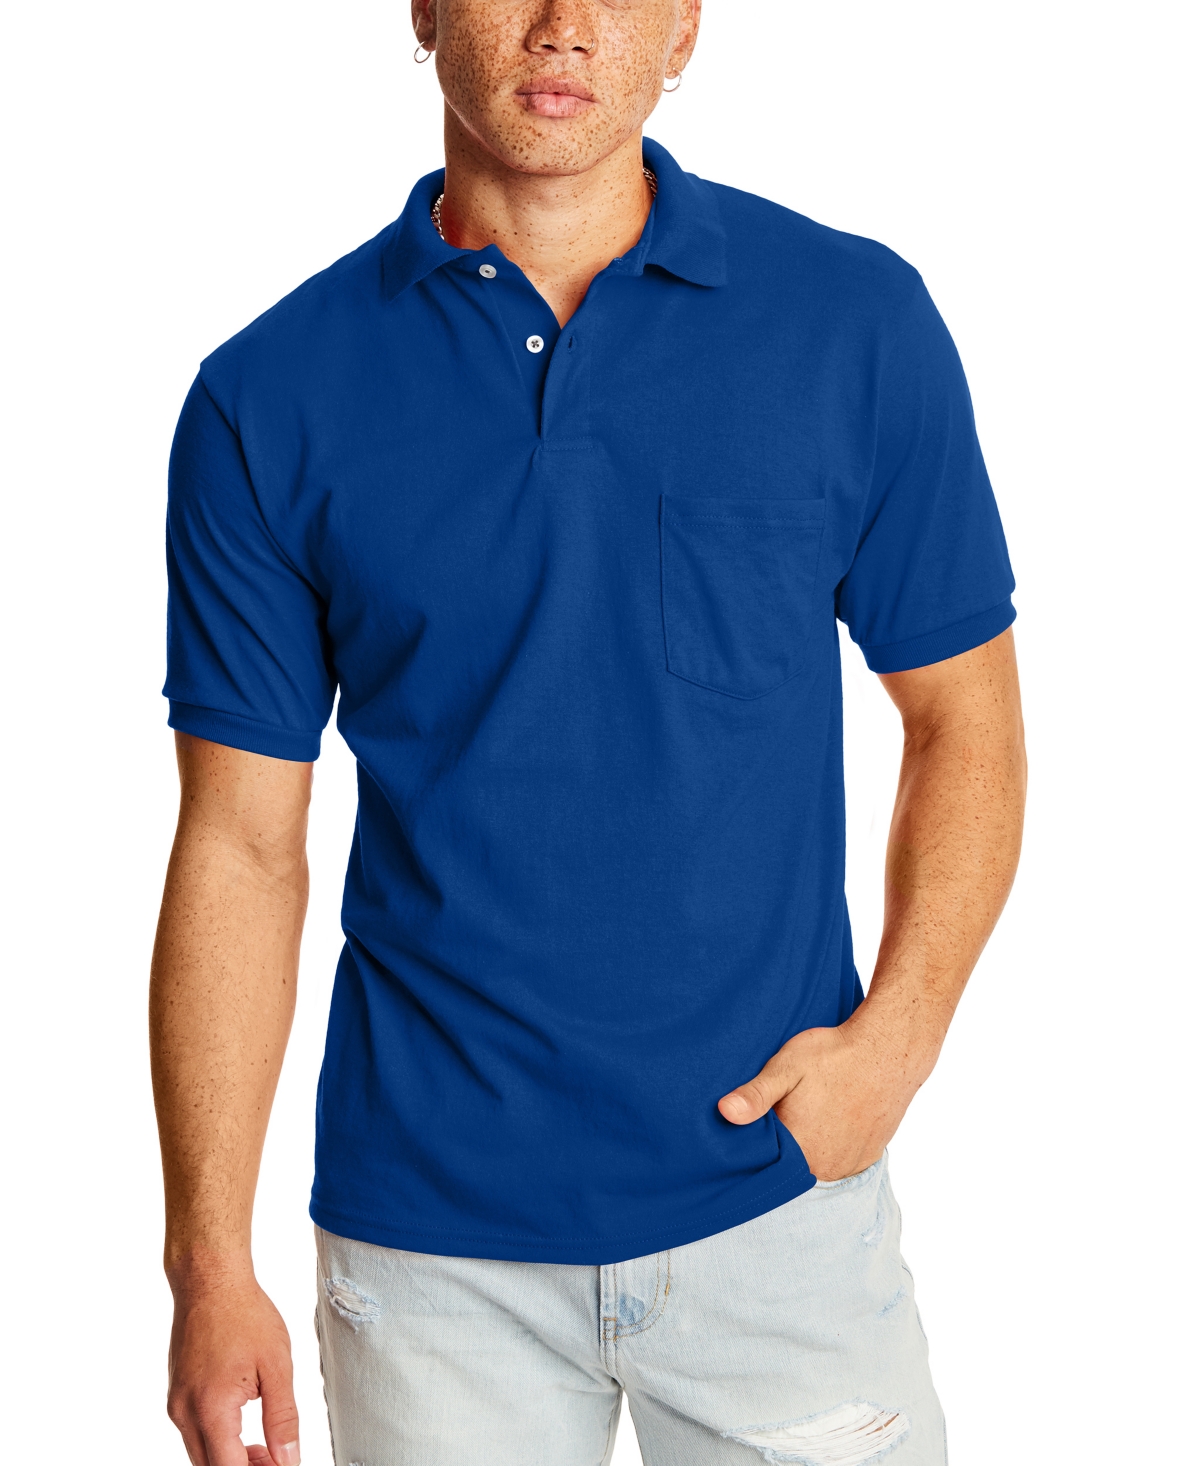 EcoSmart Men's Pocket Polo Shirt, 2-Pack - White